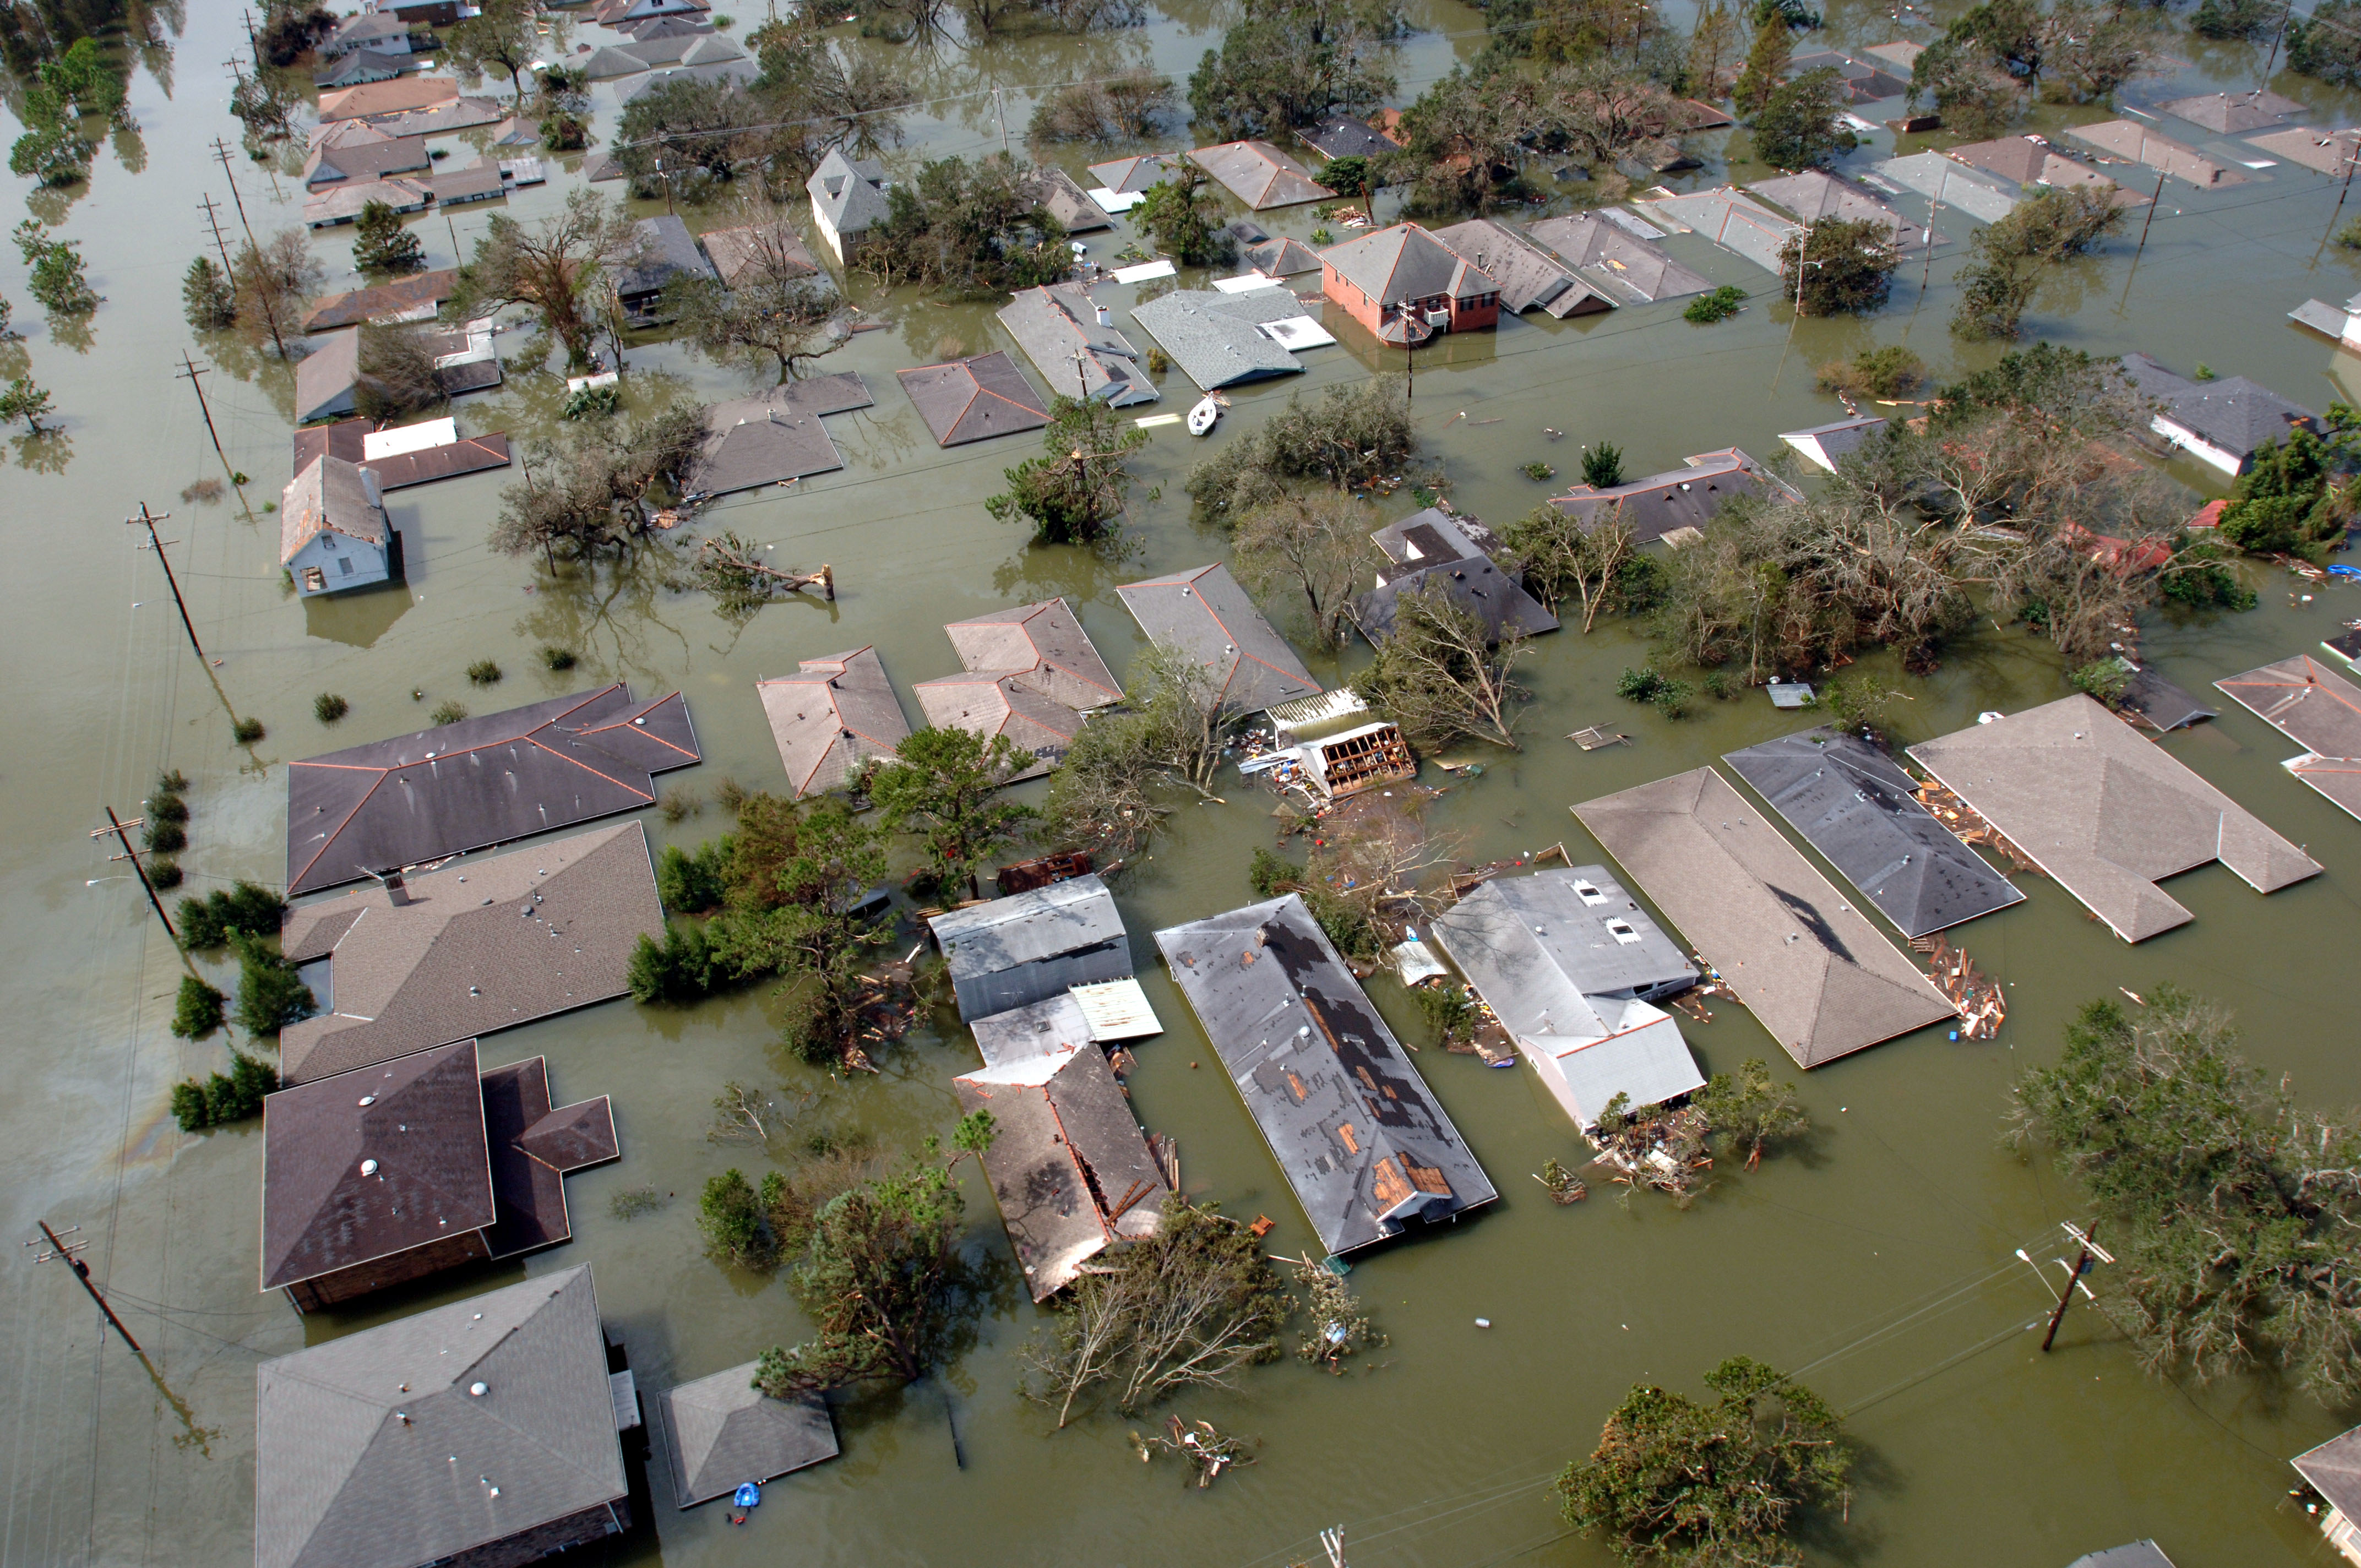 FEMA - 15008 - Photograph by Jocelyn Augustino taken on 08-30-2005 in Louisiana